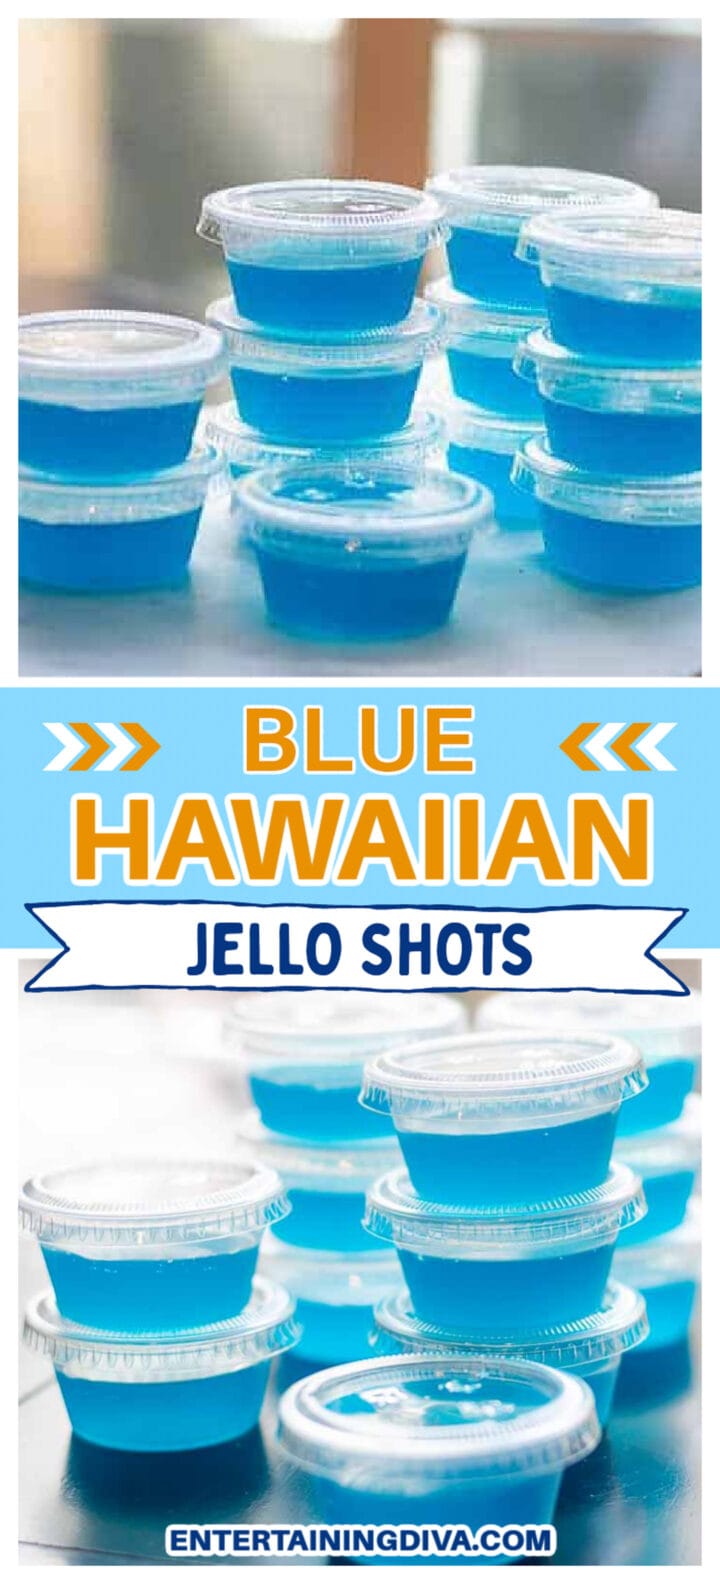 How to Make Blue Hawaiian Jello Shots